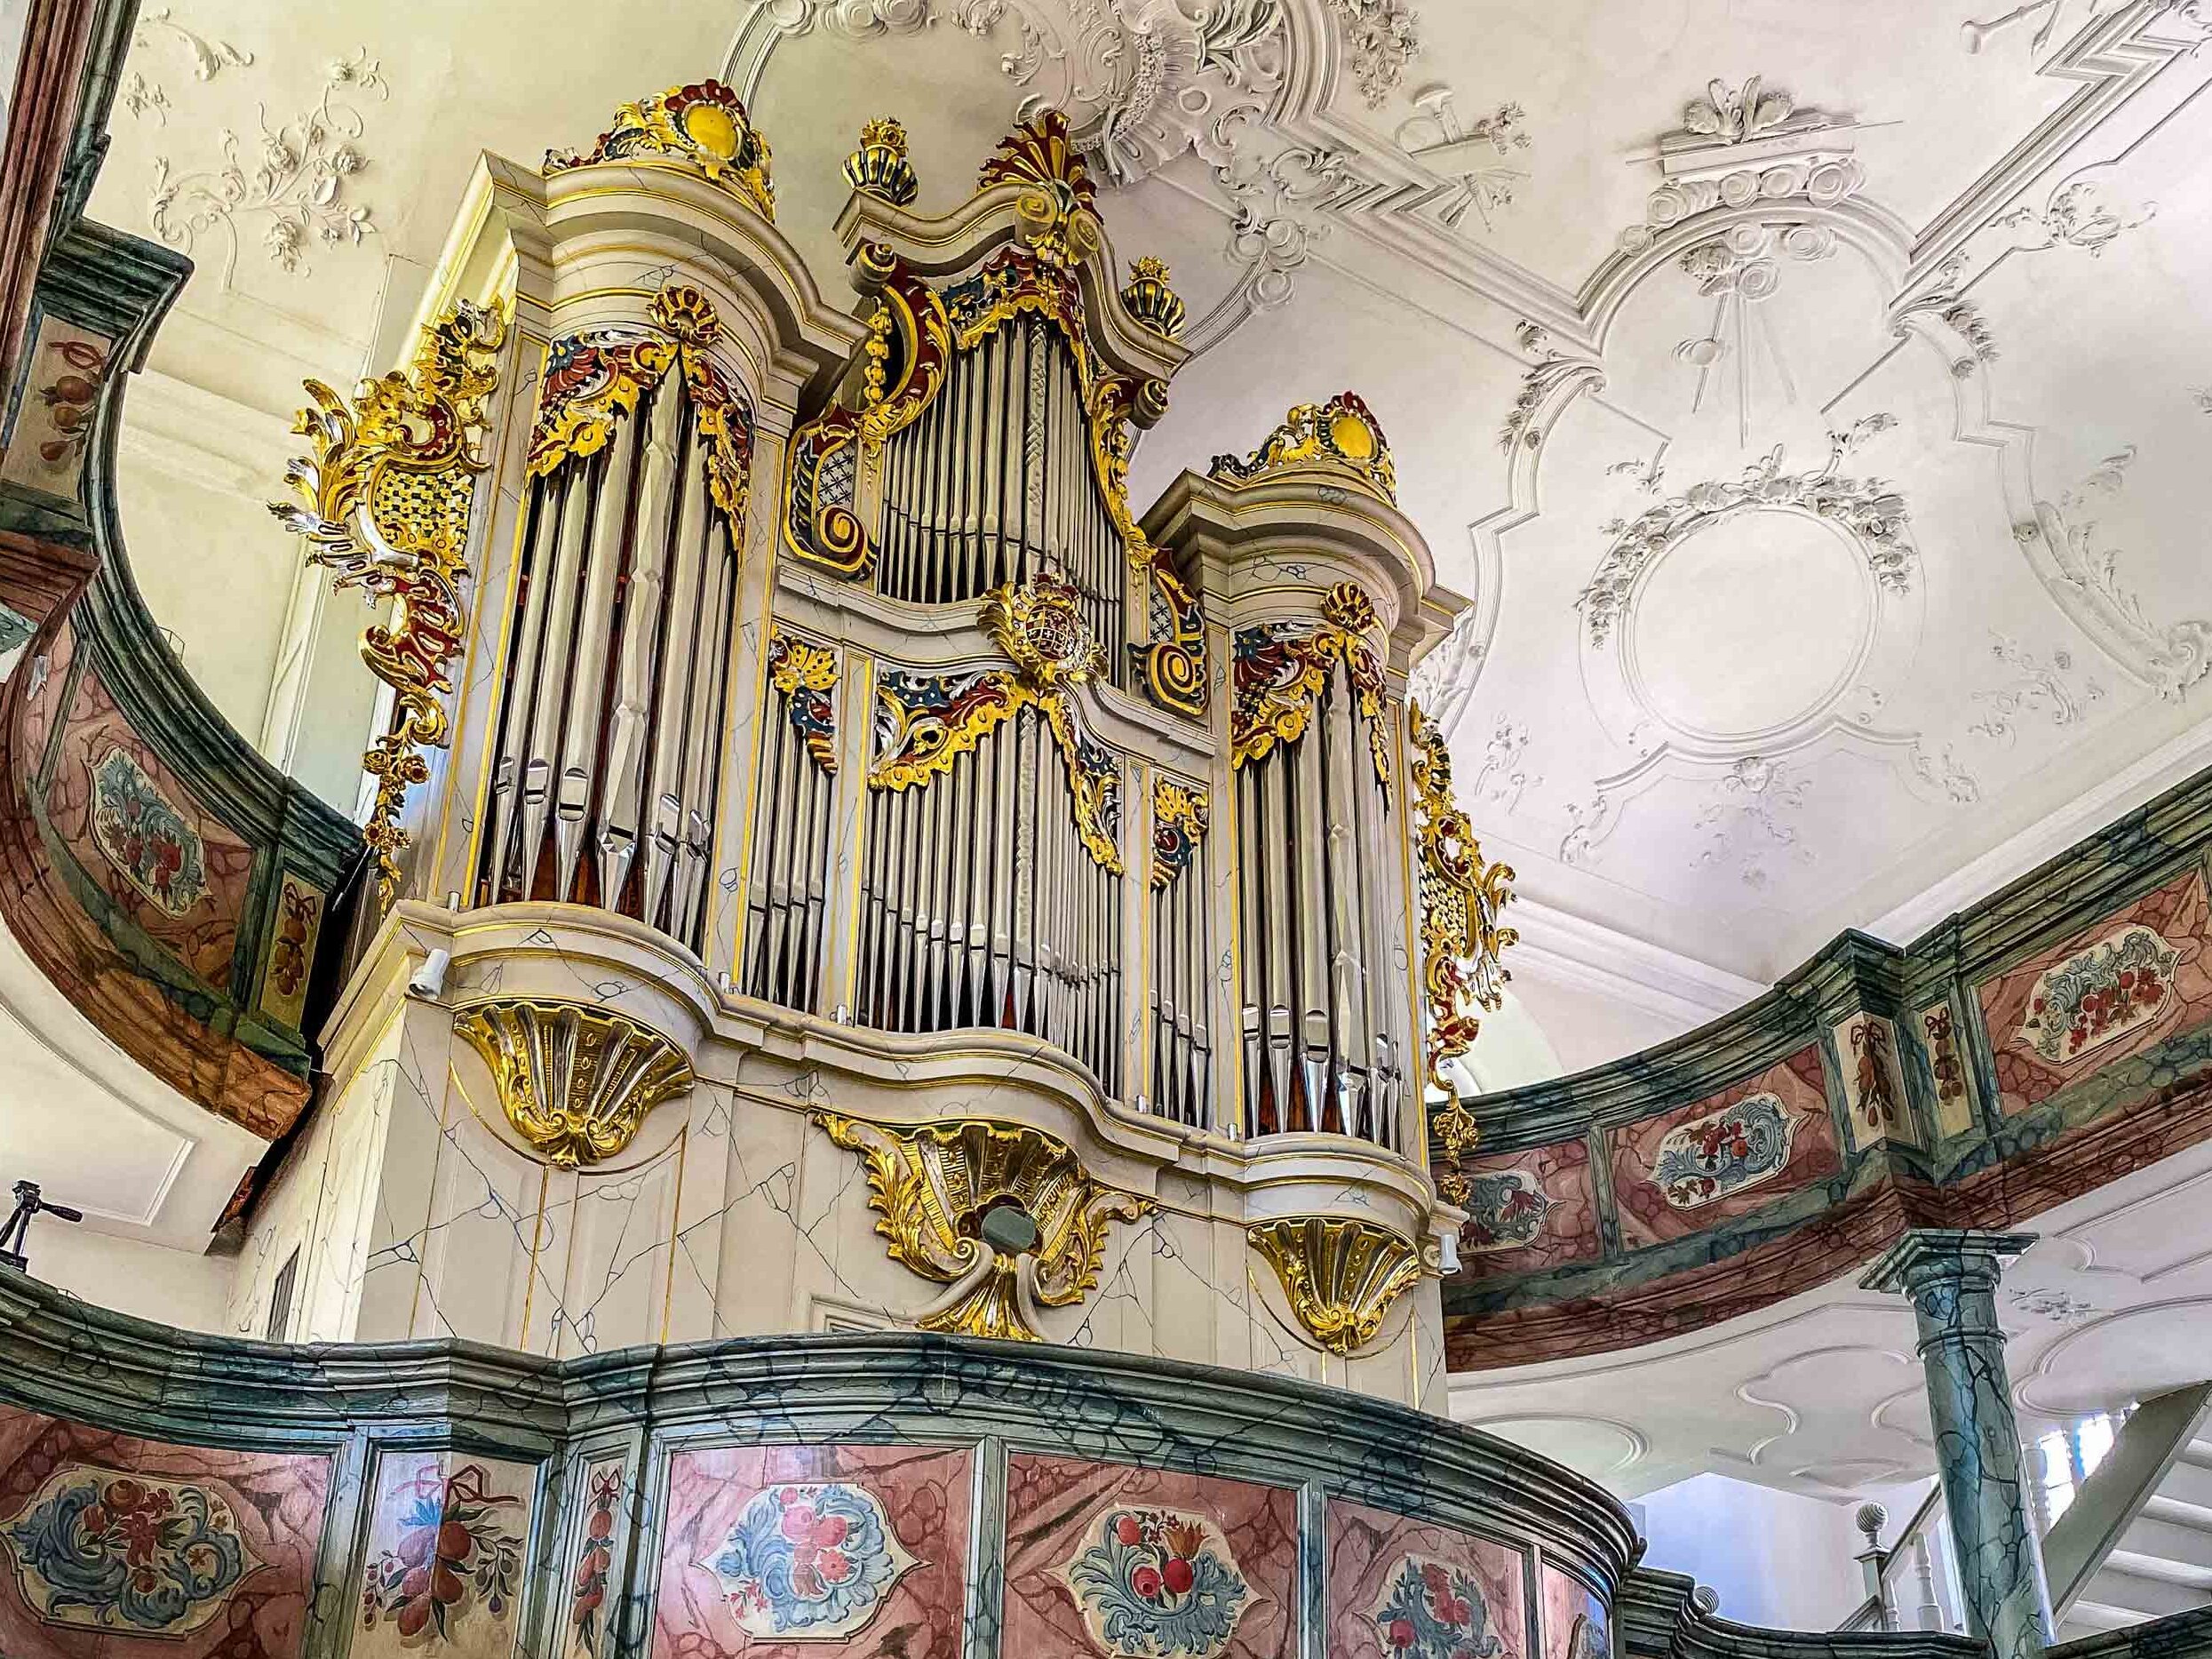 Evangelische Kirche St. Johannes - die Orgel